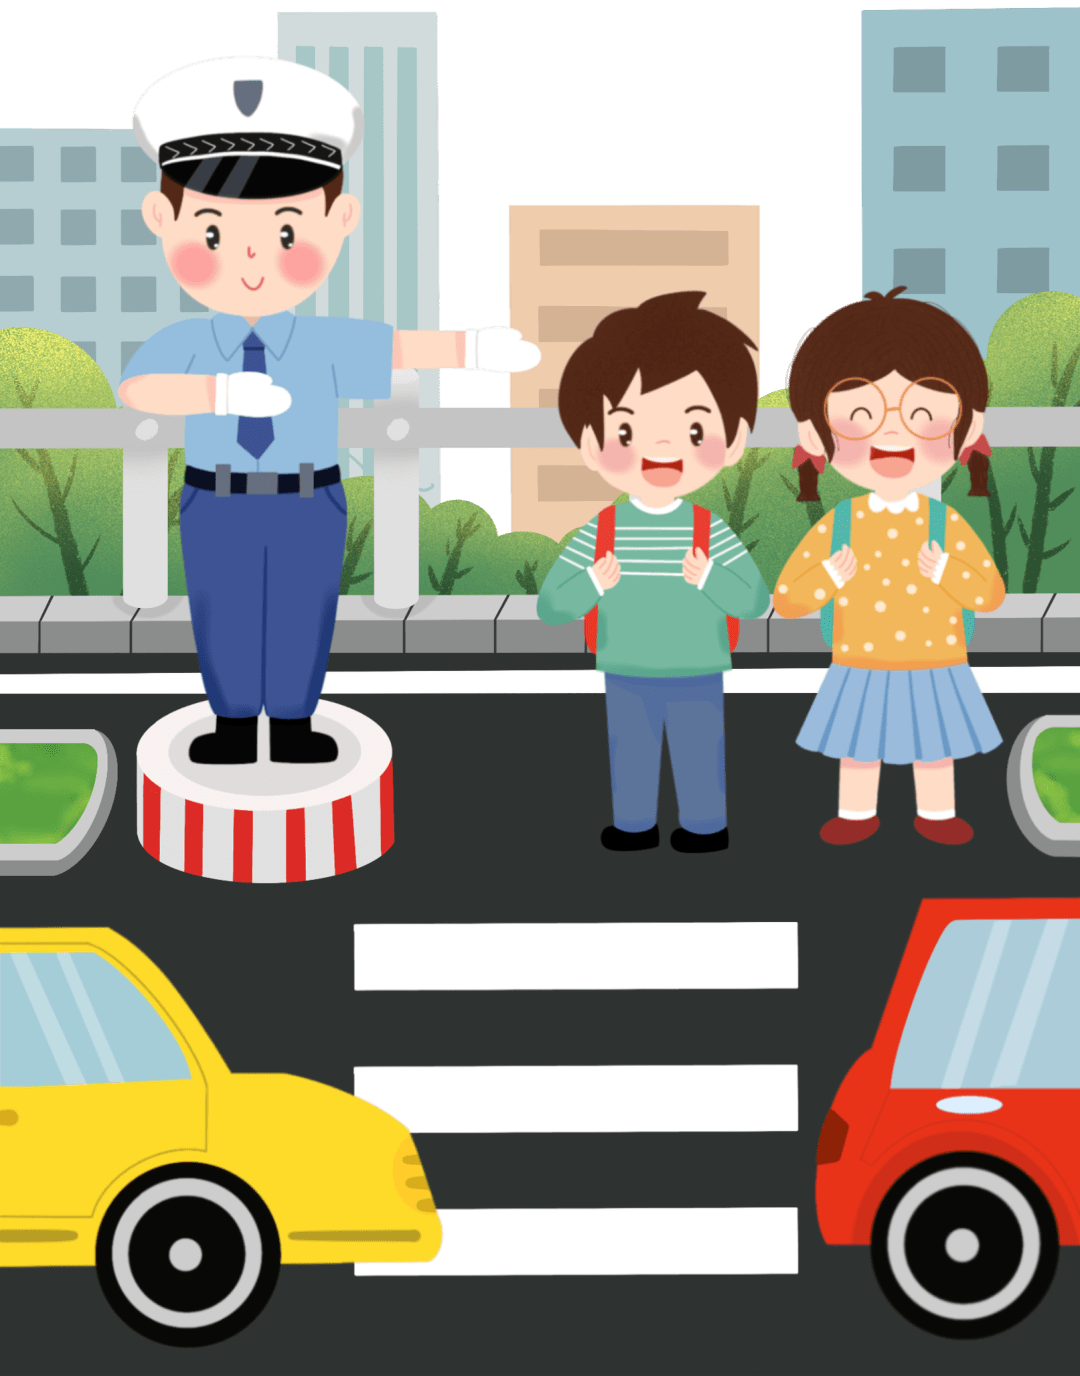 交通安全 暑期学生交通安全常识 孩子 安全带 马路